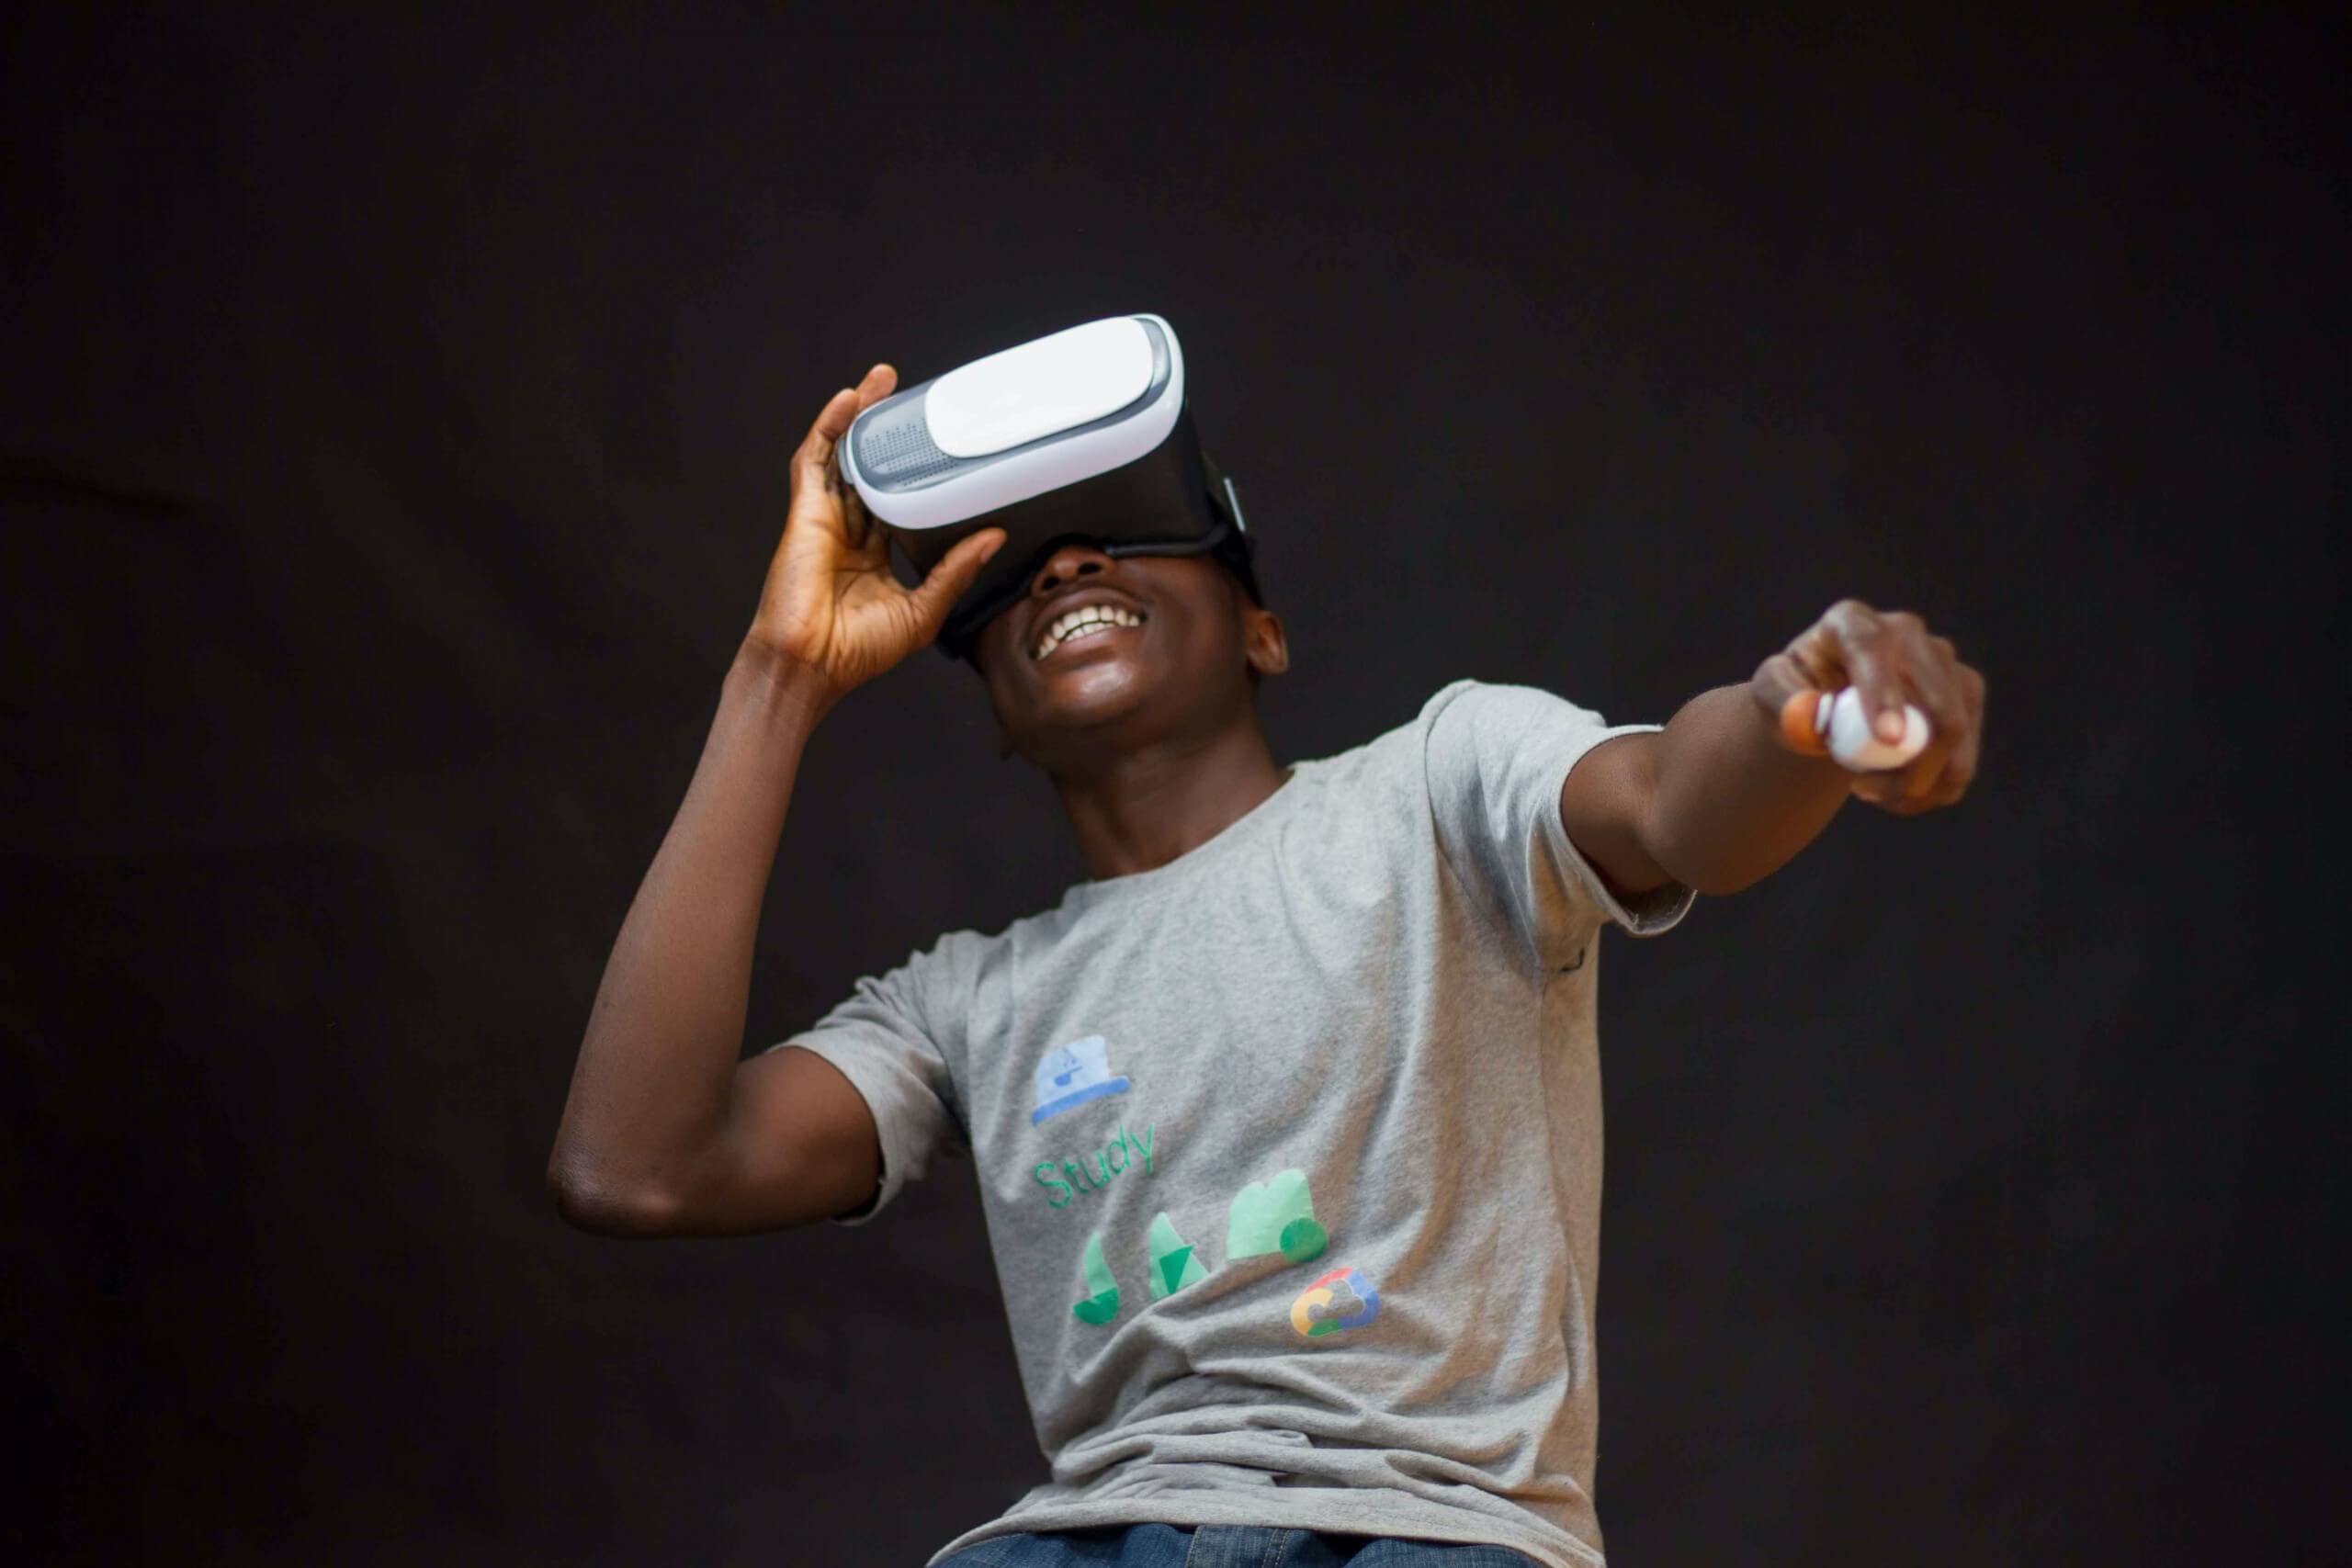 Ein lachender Mann in einem grauen Shirt und einer VR-Brille